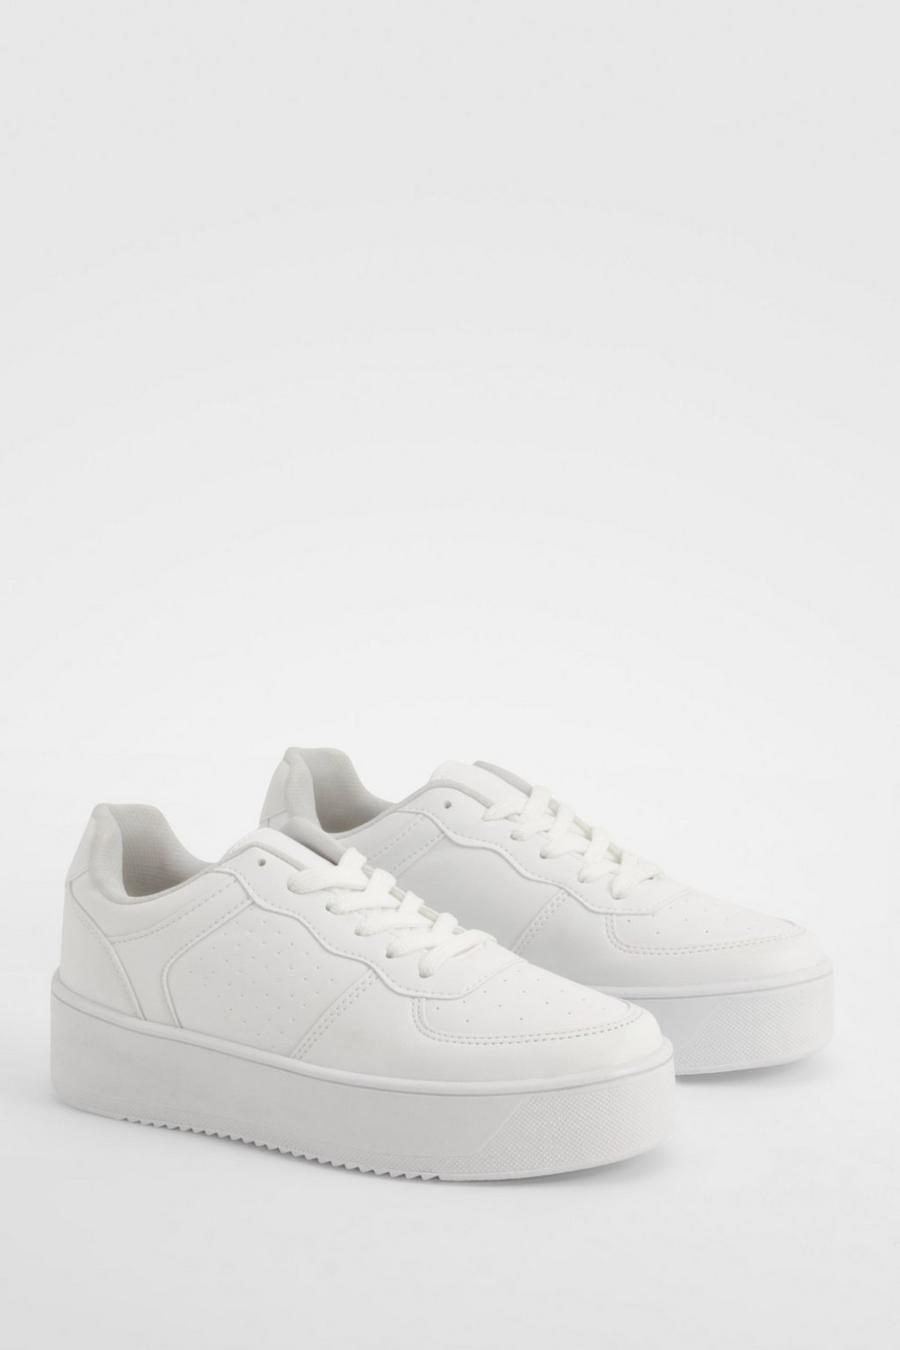 Klobige Platform-Sneaker mit Kontrast-Einsatz, White